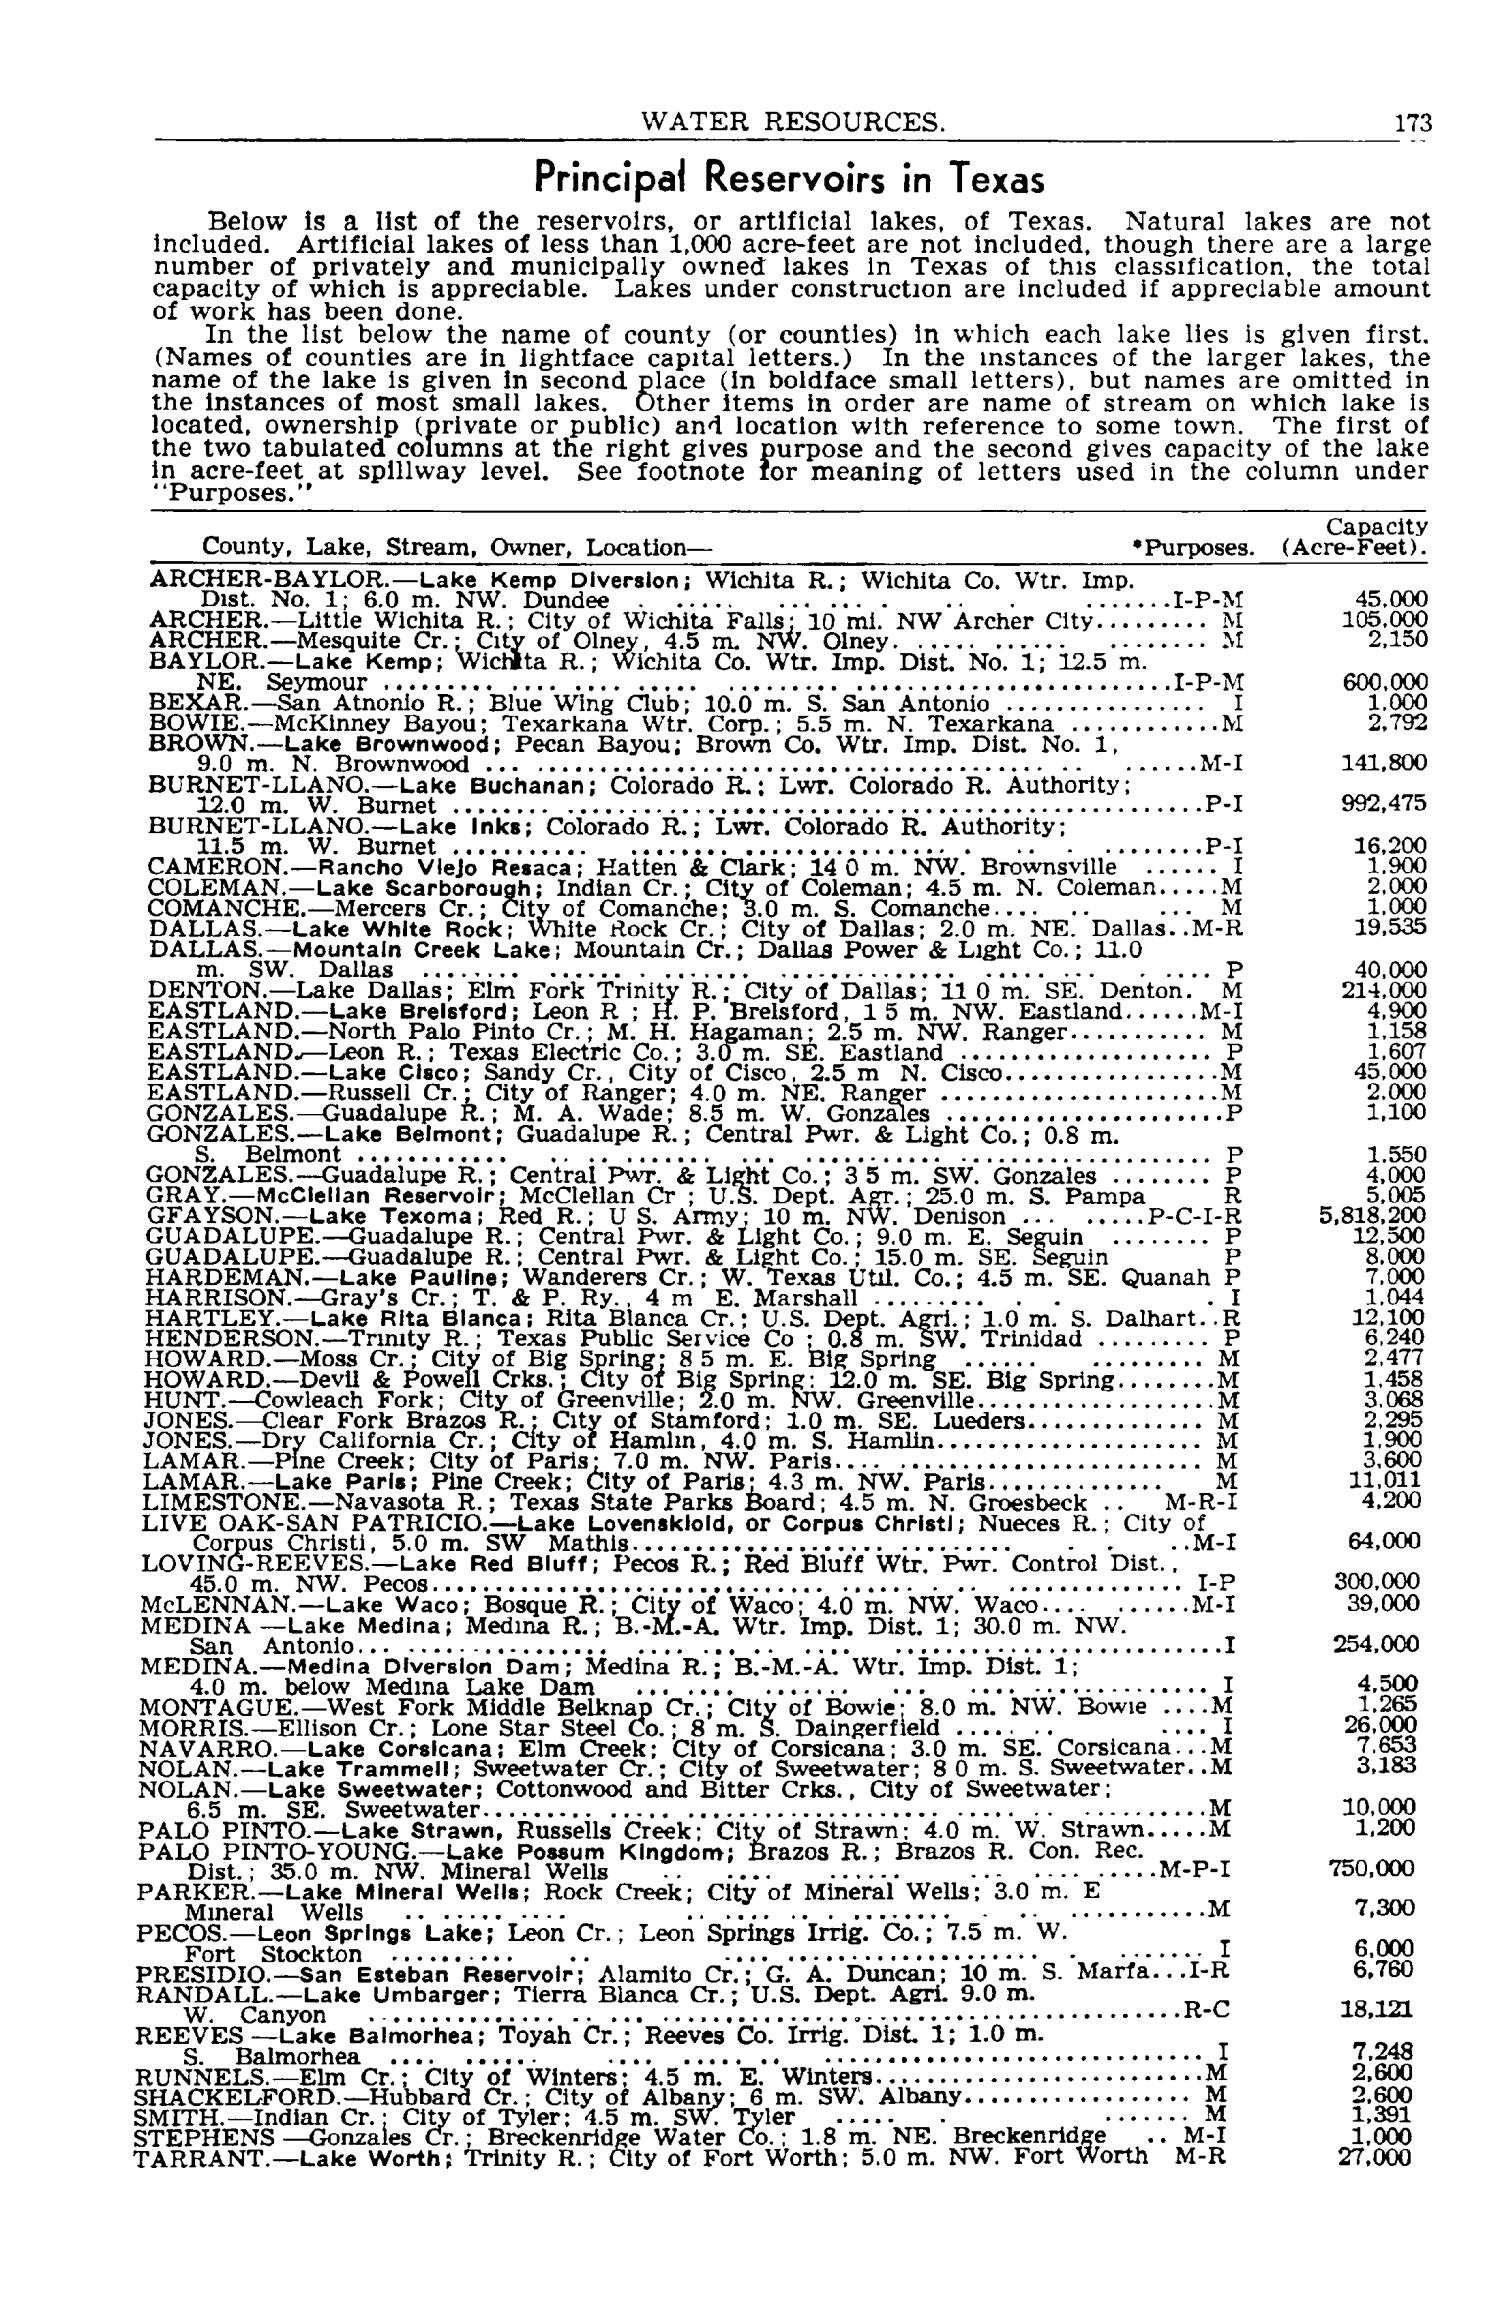 Texas Almanac, 1945-1946
                                                
                                                    173
                                                